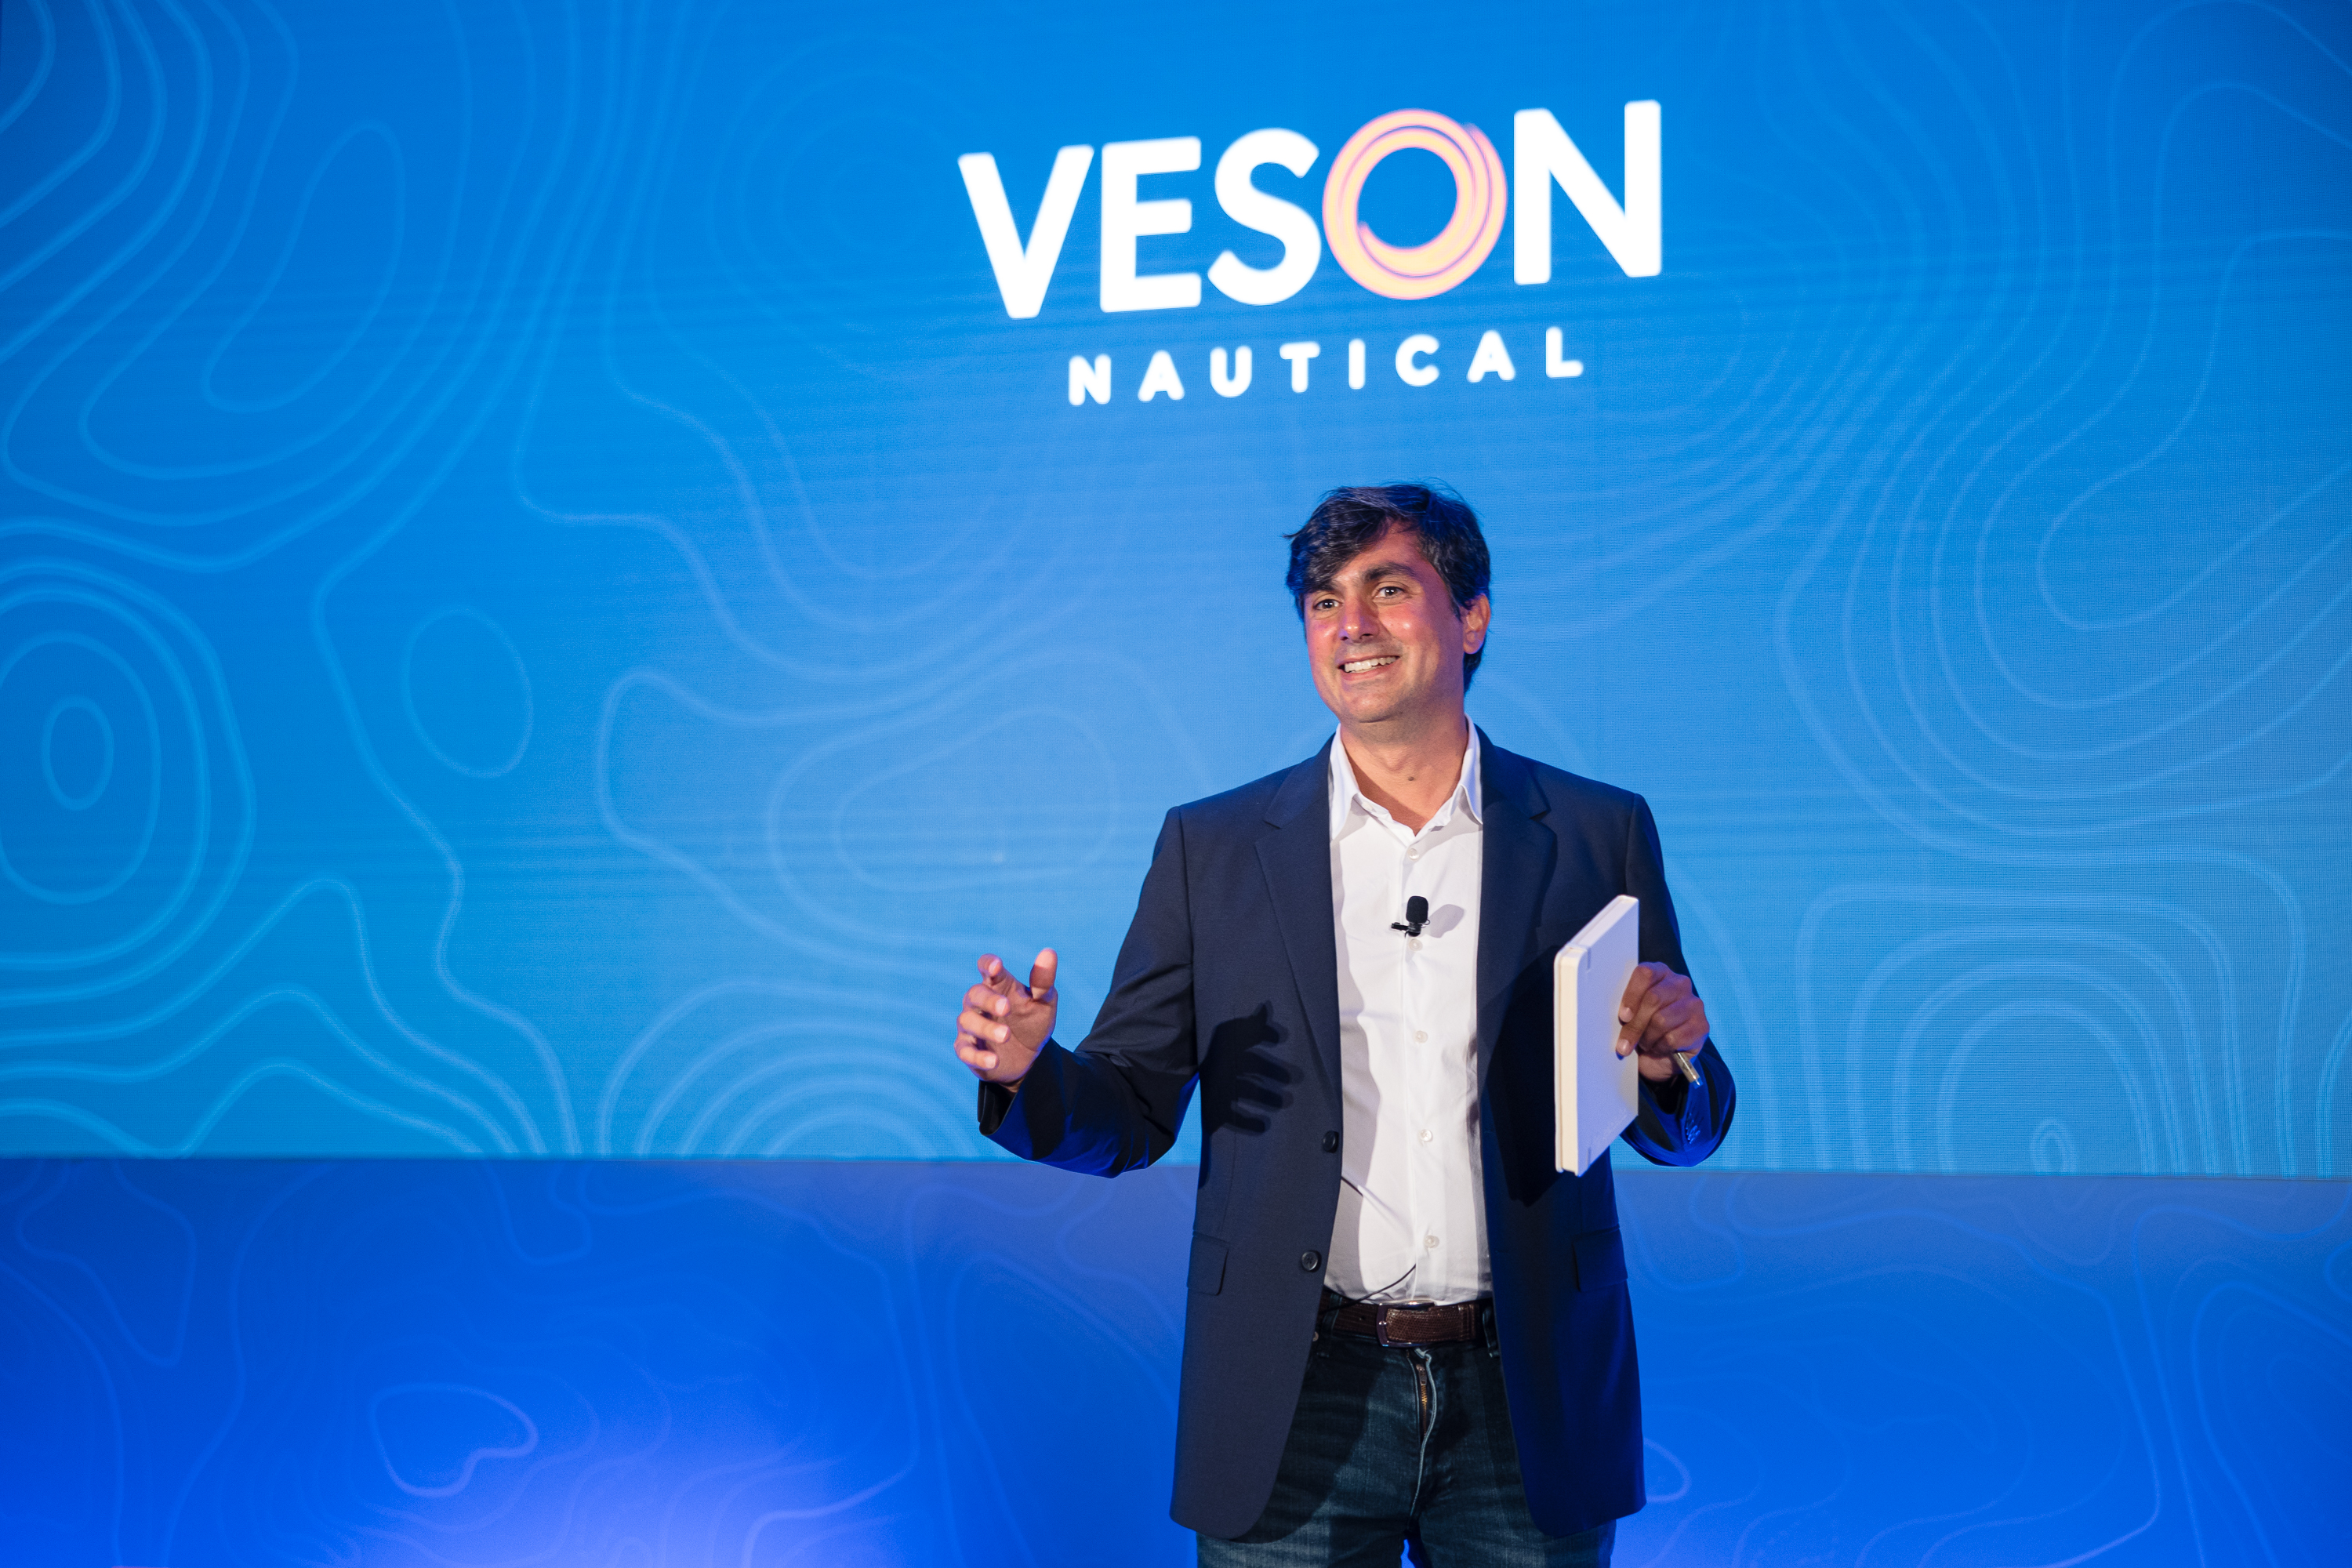 John Veson - Veson Nautical presenting at ONCOURSE2023